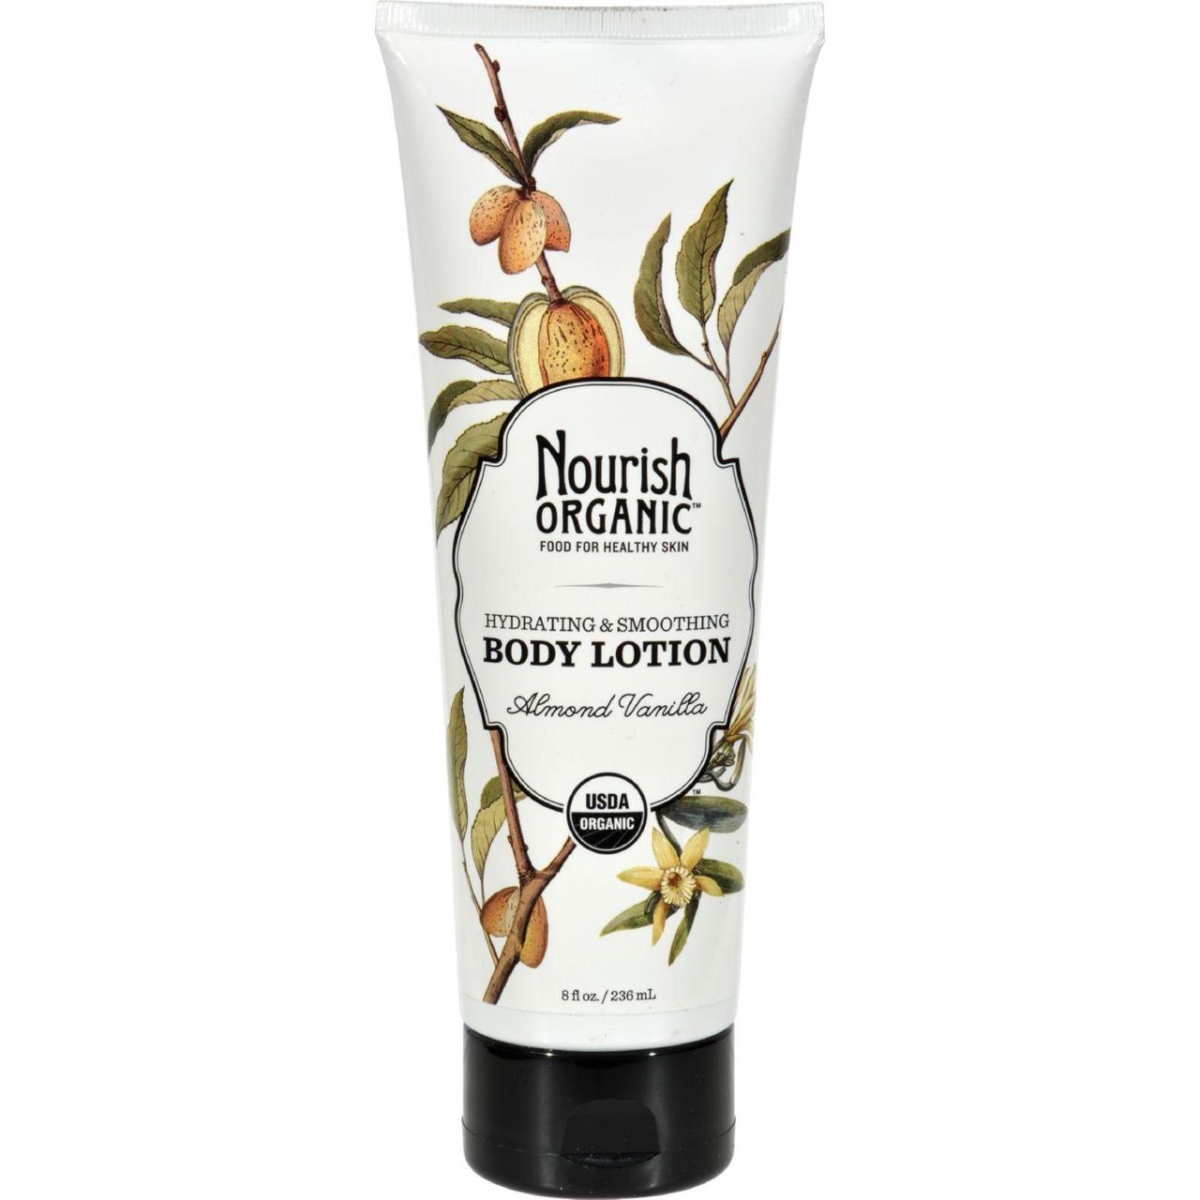 Nourish Hg1120765 8 Fl Oz Organic Body Lotion, Almond Vanilla